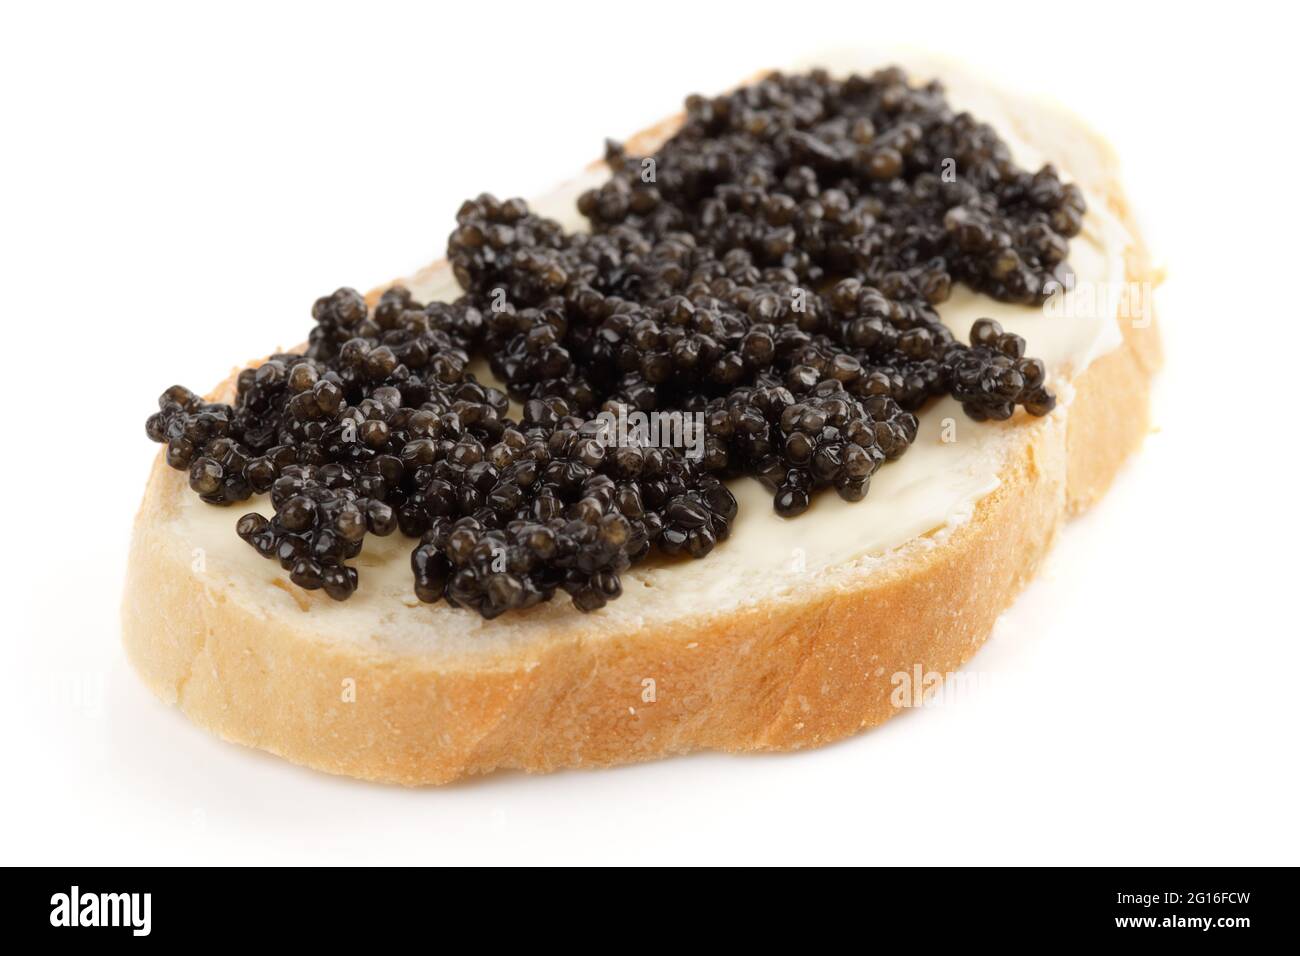 Echt, nicht imitiert, Beluga-Kaviar auf Brot mit Butter, isoliert auf weißem Hintergrund Stockfoto